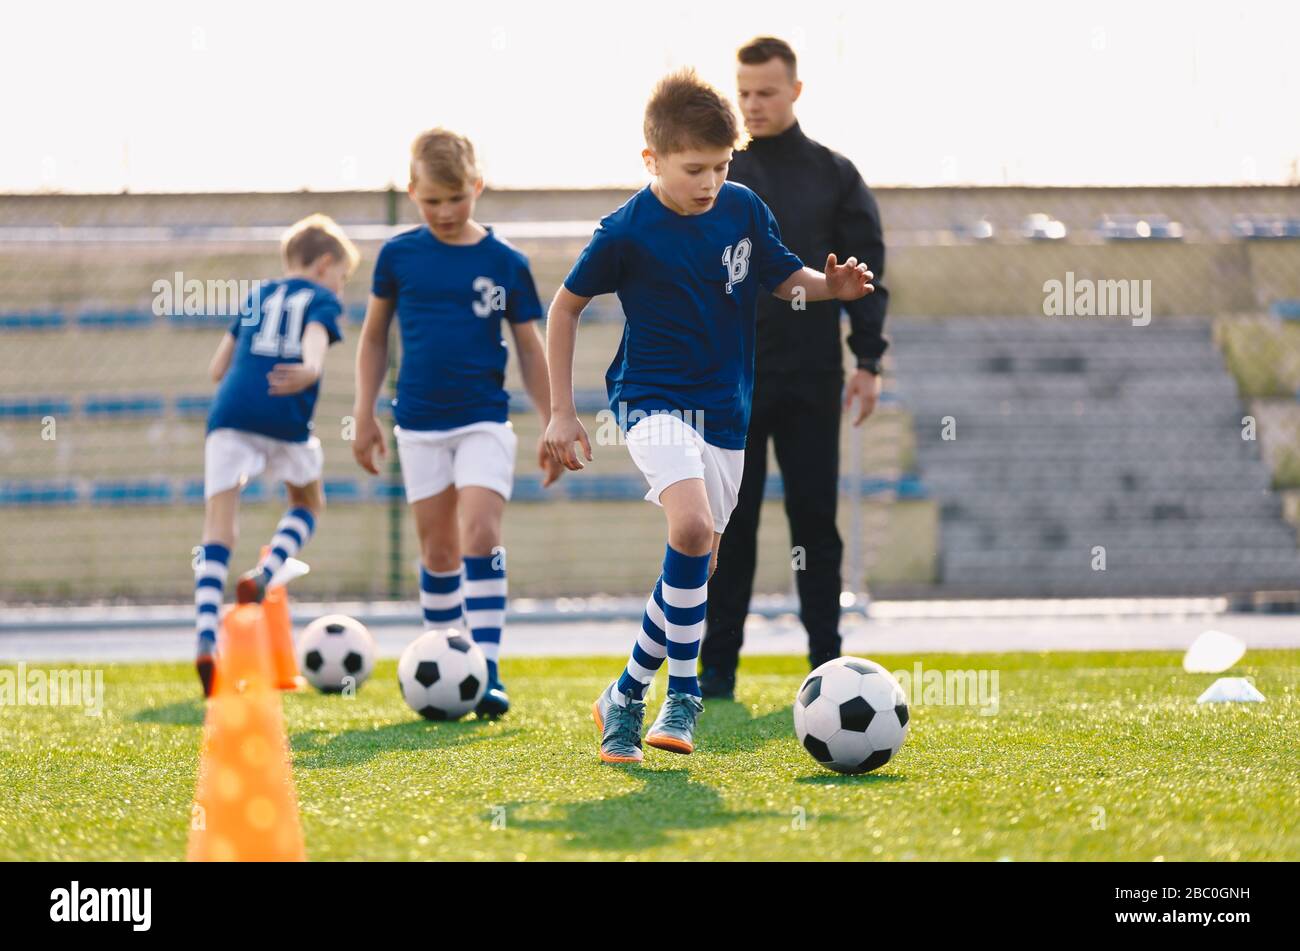 Young Boys in Sports Soccer Club on Training Unit. Kinder verbessern die Fußballfähigkeiten auf dem natürlichen Rasengras-Pitch. Fußball-Übungssitzung für Kinder Stockfoto